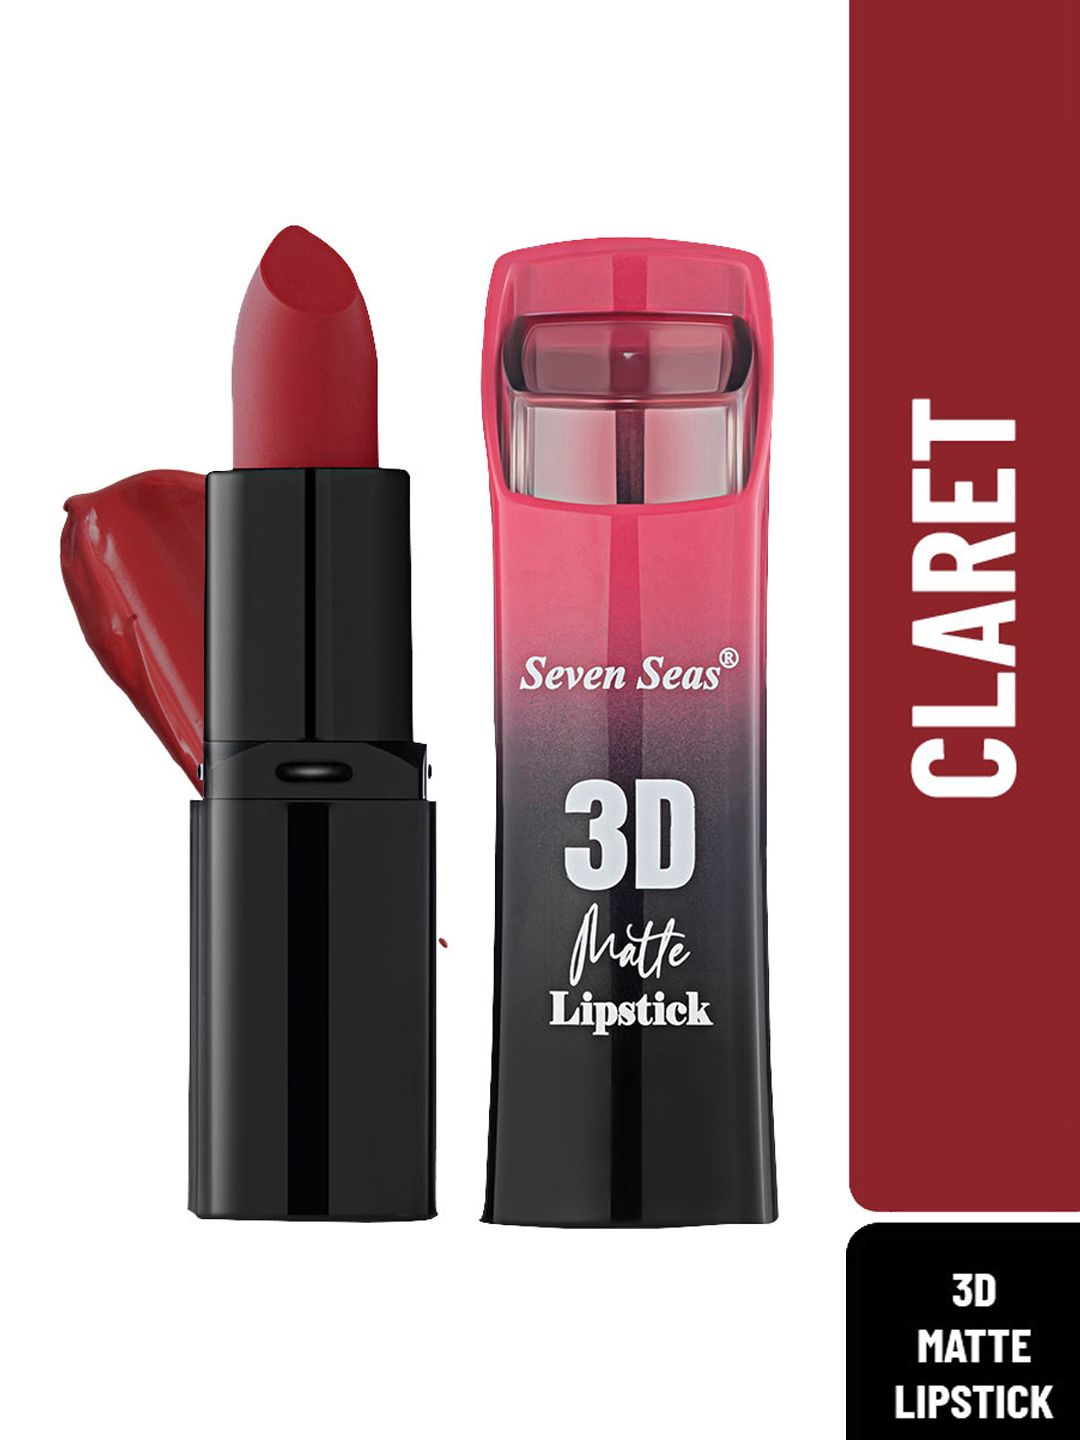 Seven Seas Full Coverage 3D Matte Lipstick, 3.8g - Claret Price in India